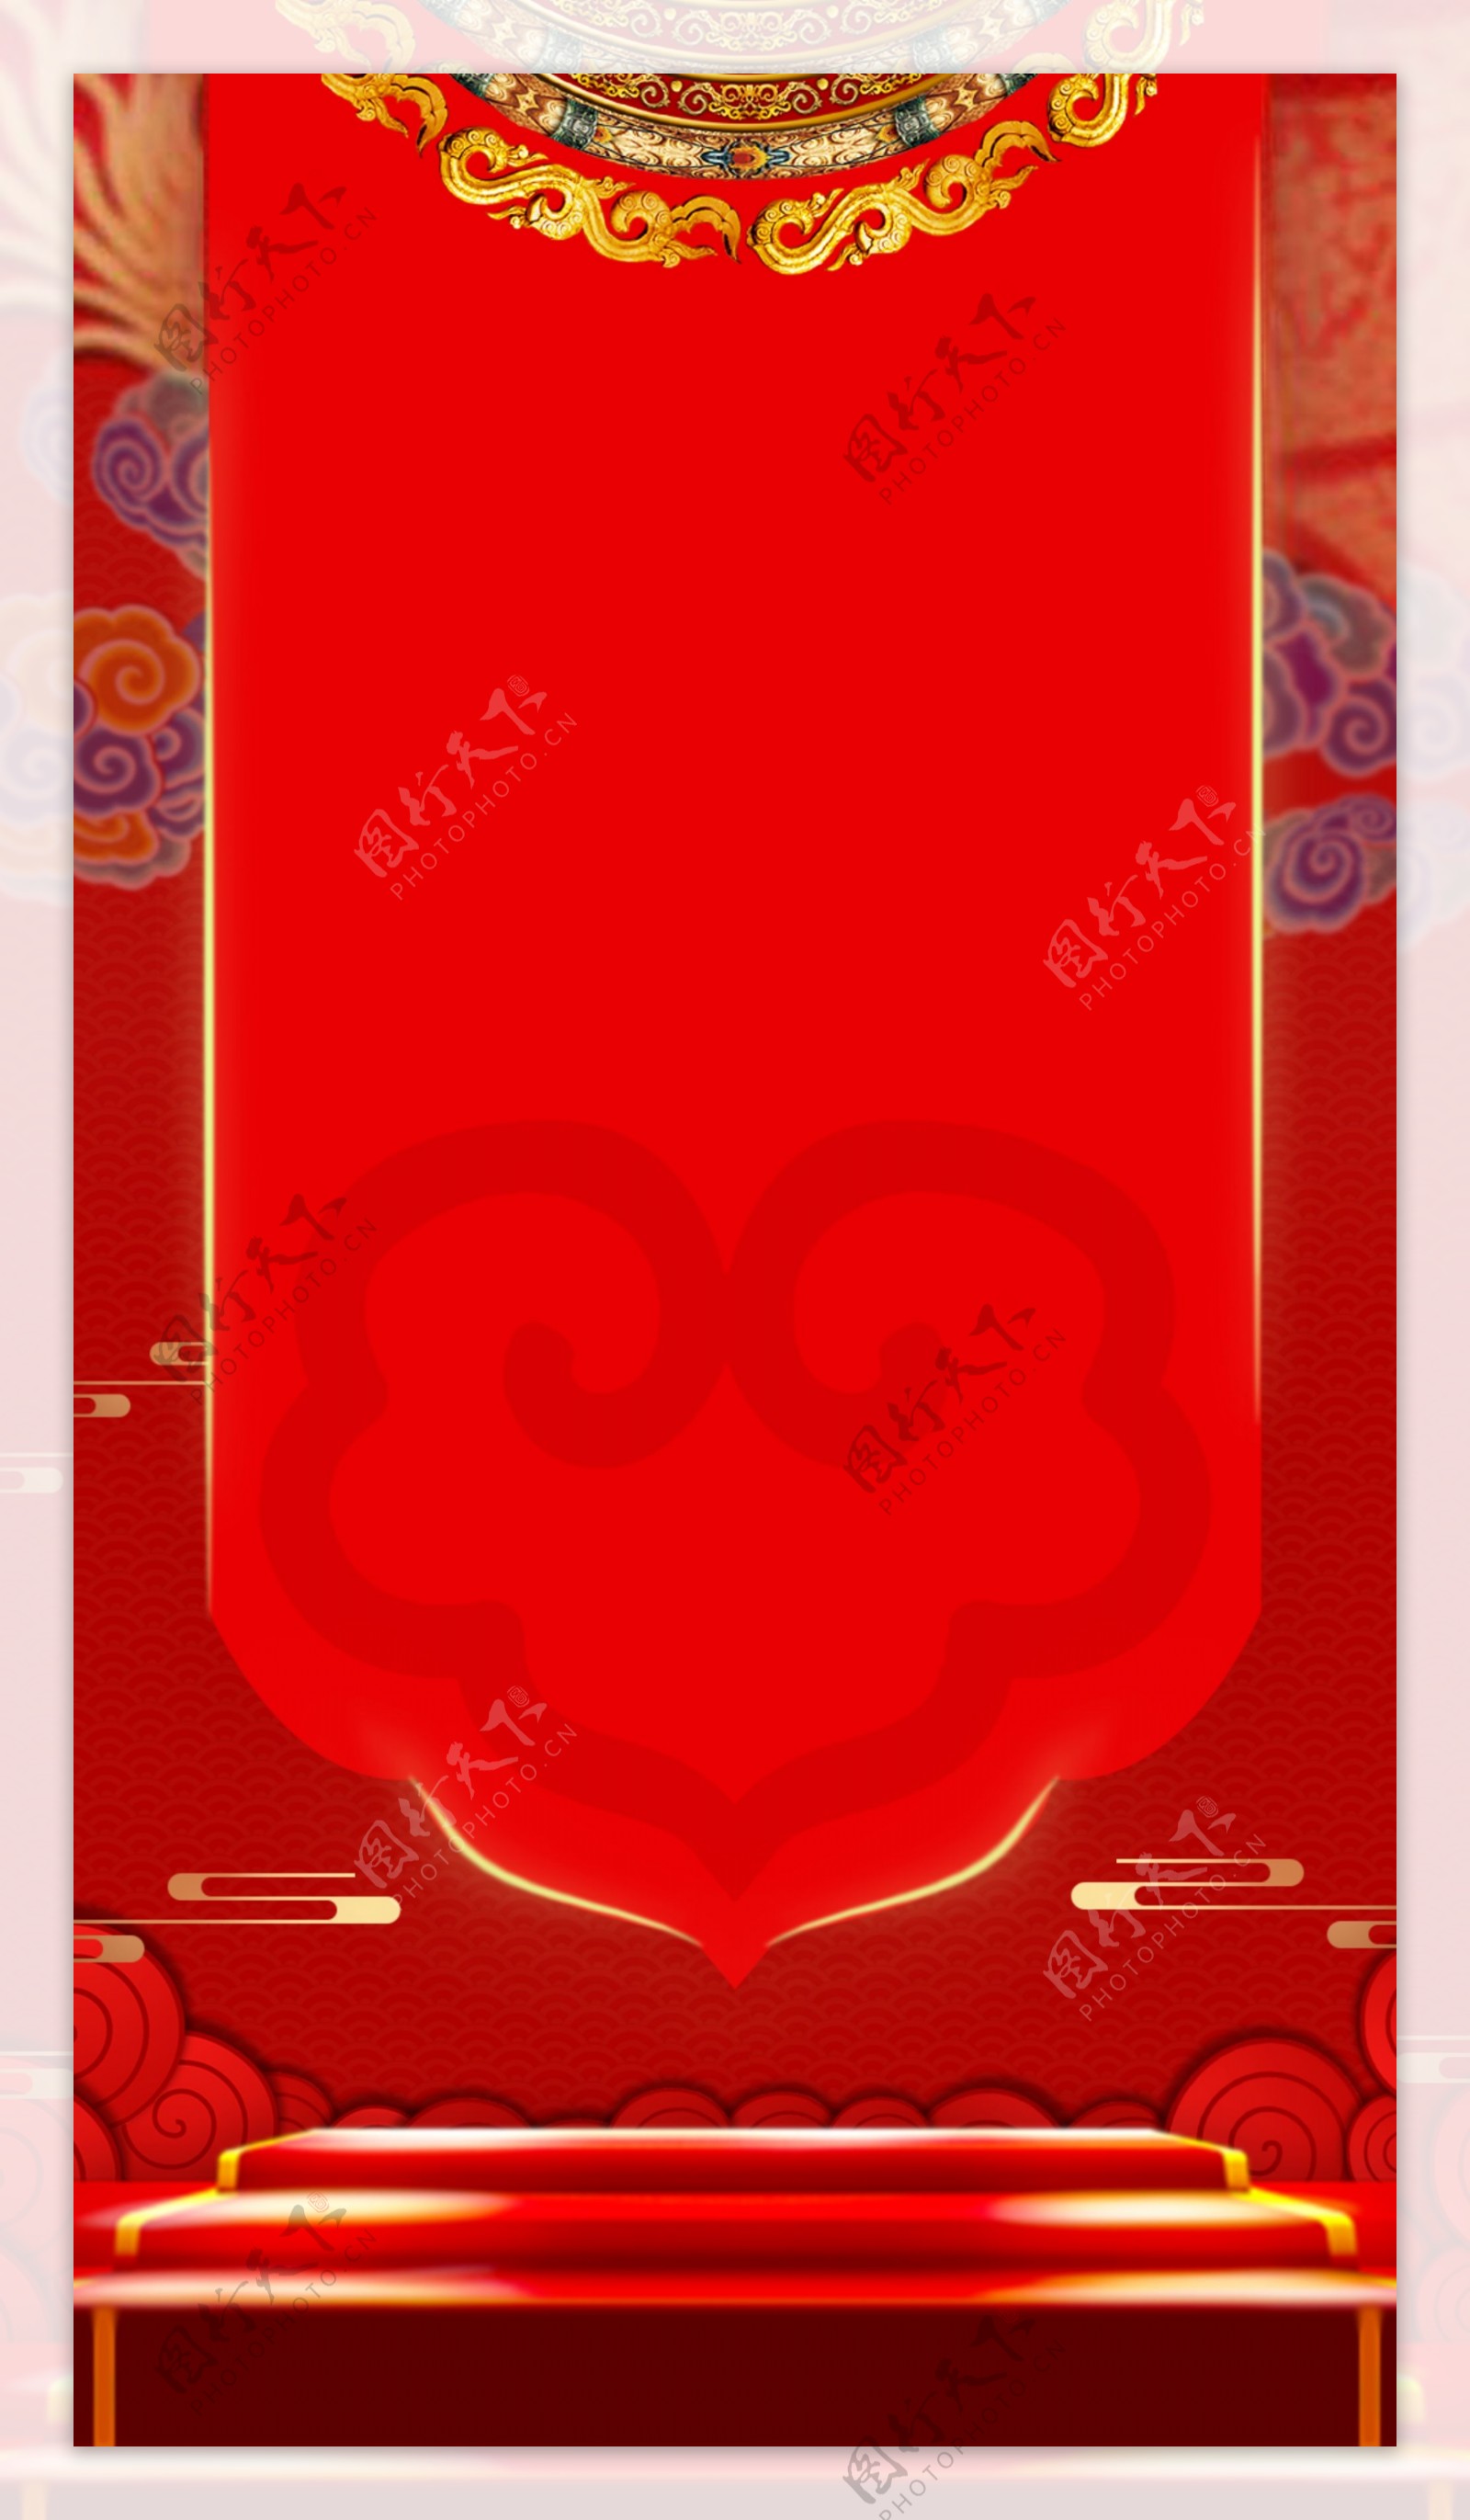 新年春节促销活动红色背景模板PSD源文件